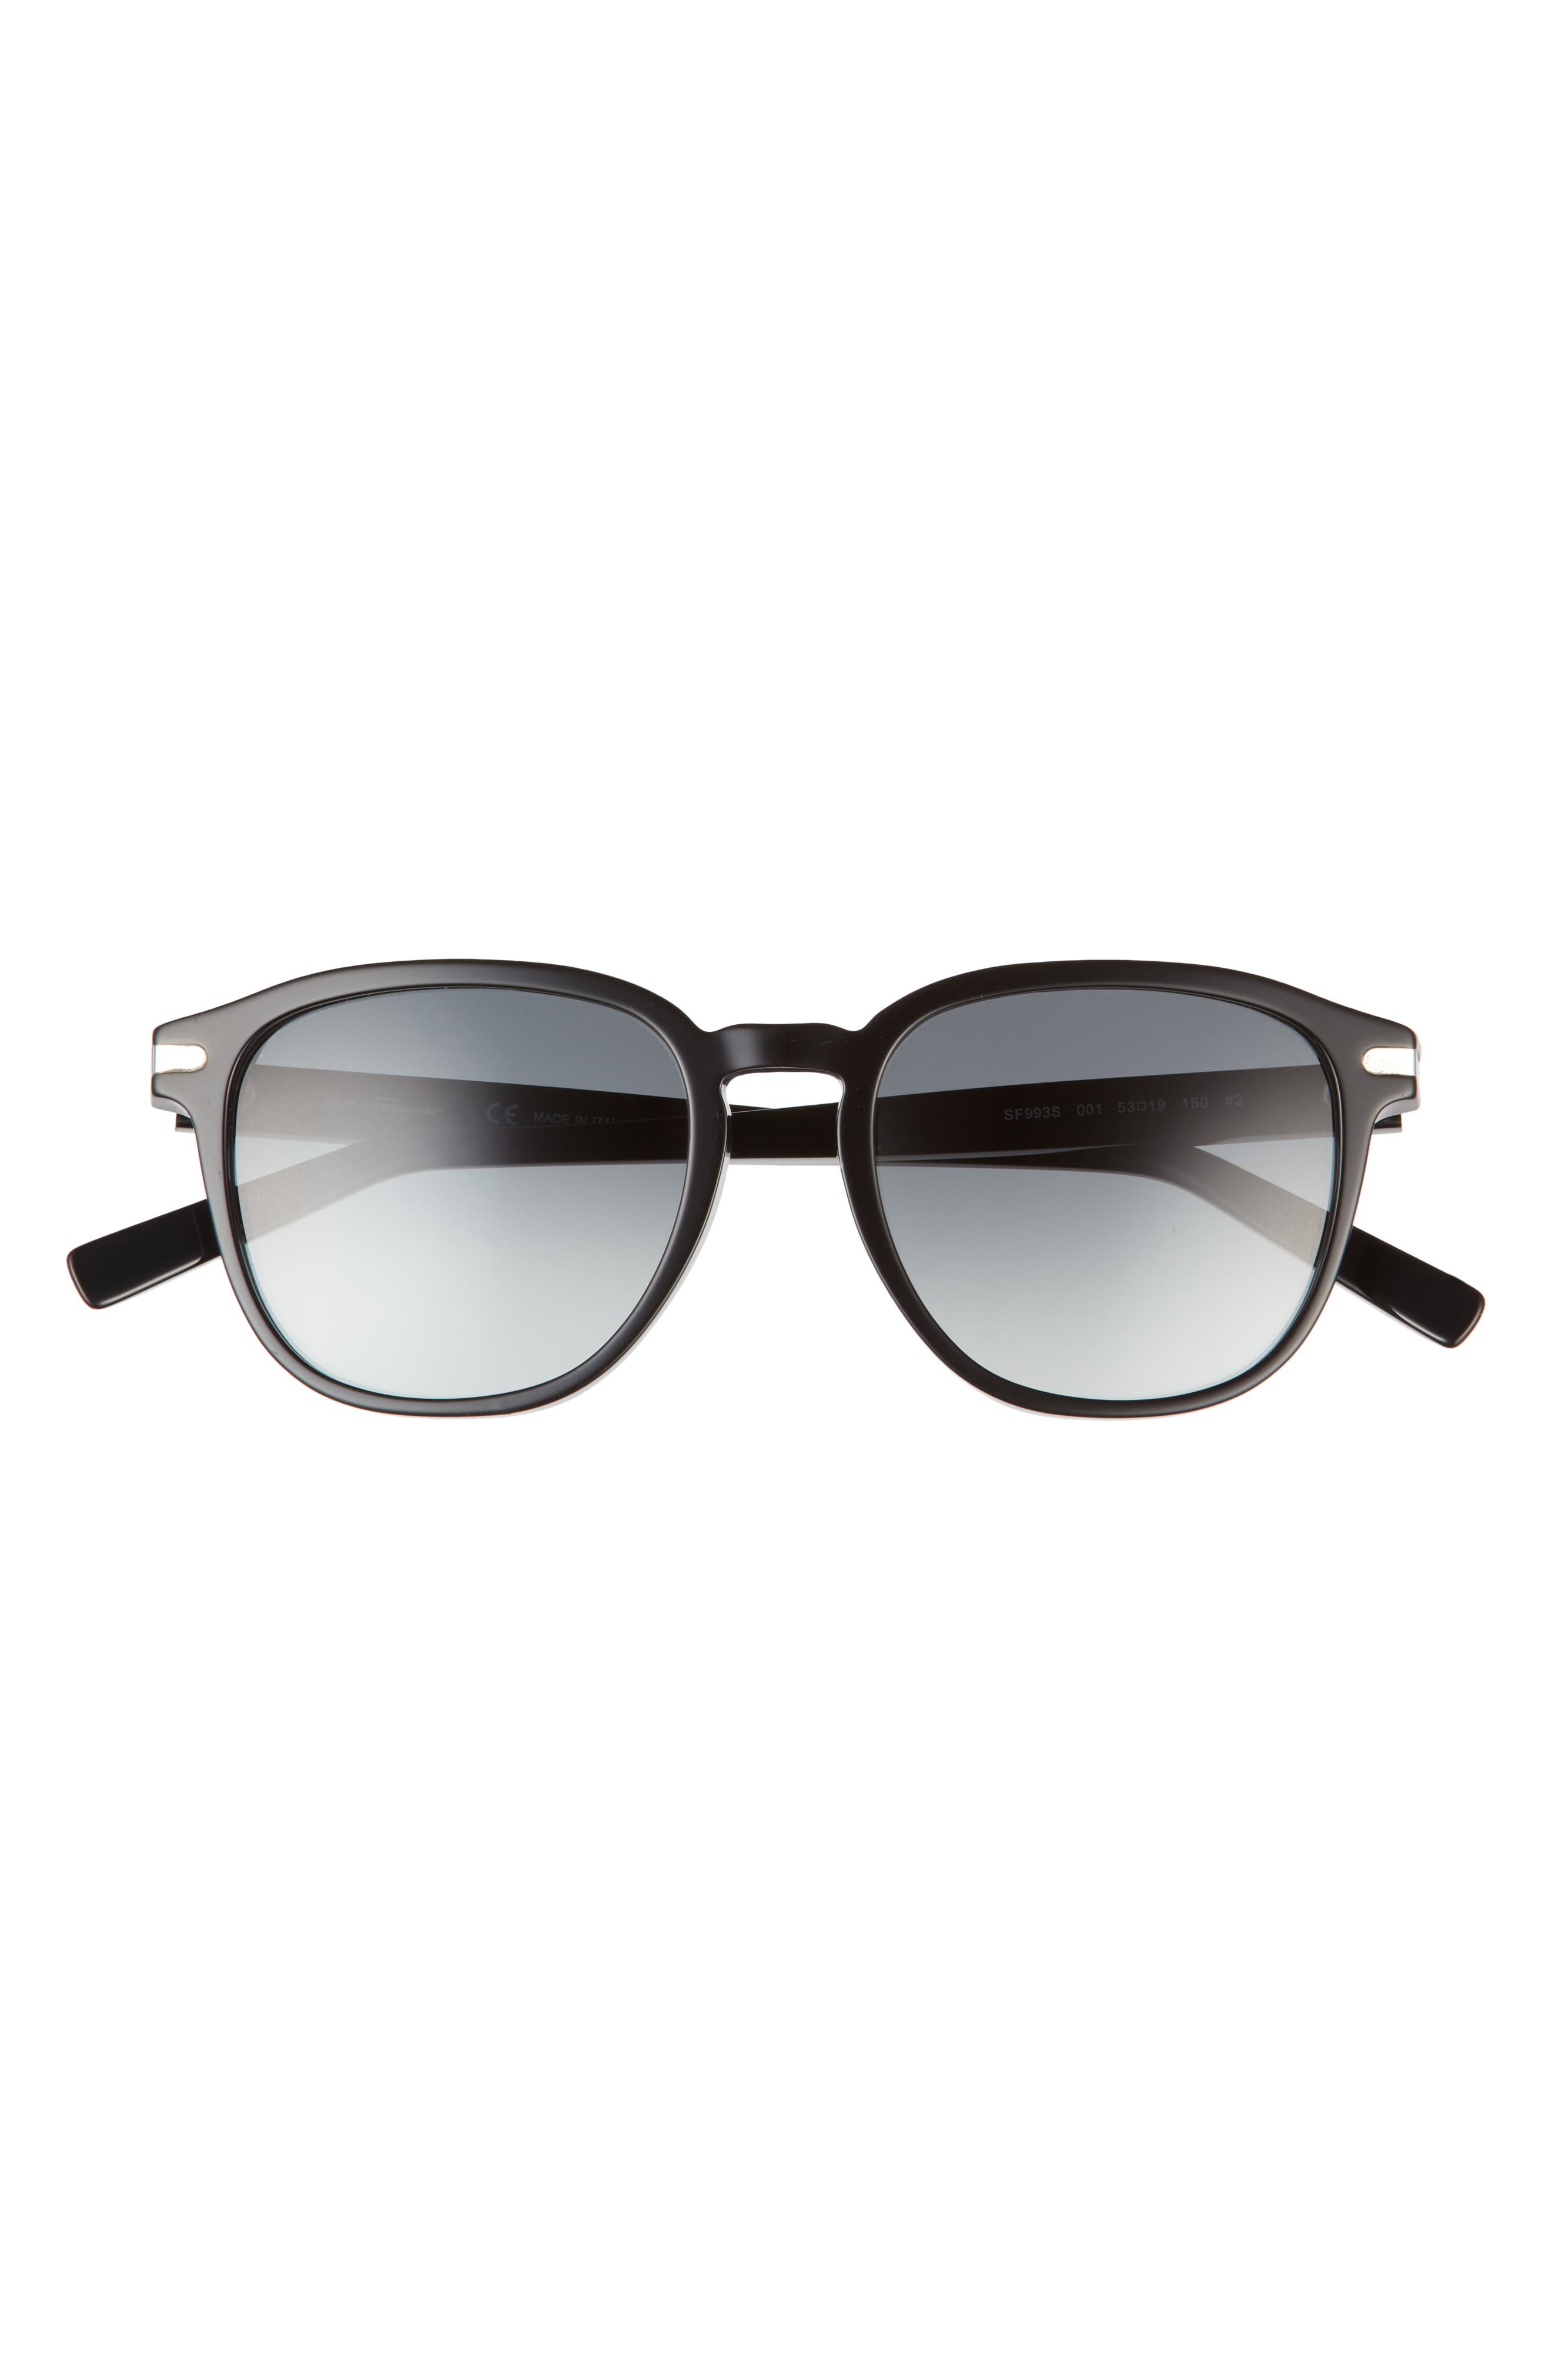 Salvatore Ferragamo Timeless 53mm Rectangular Sunglasses in Black /Blue Gradient at Nordstrom